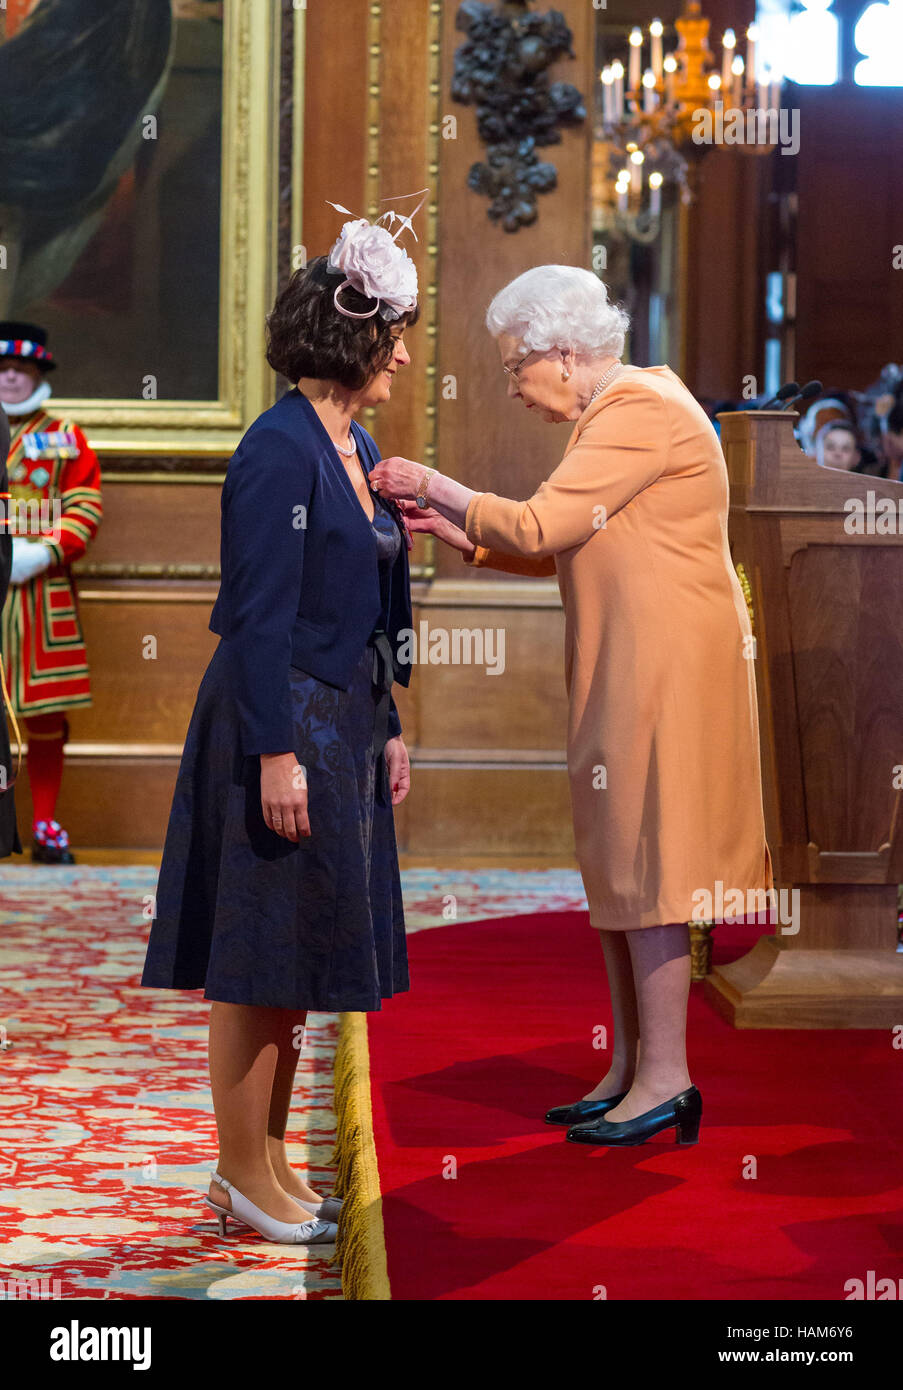 Deborah Alsina-Anderson est fait un MBE (Membre de l'ordre de l'Empire britannique) par la reine Elizabeth II lors d'une cérémonie au Château de Windsor. Banque D'Images